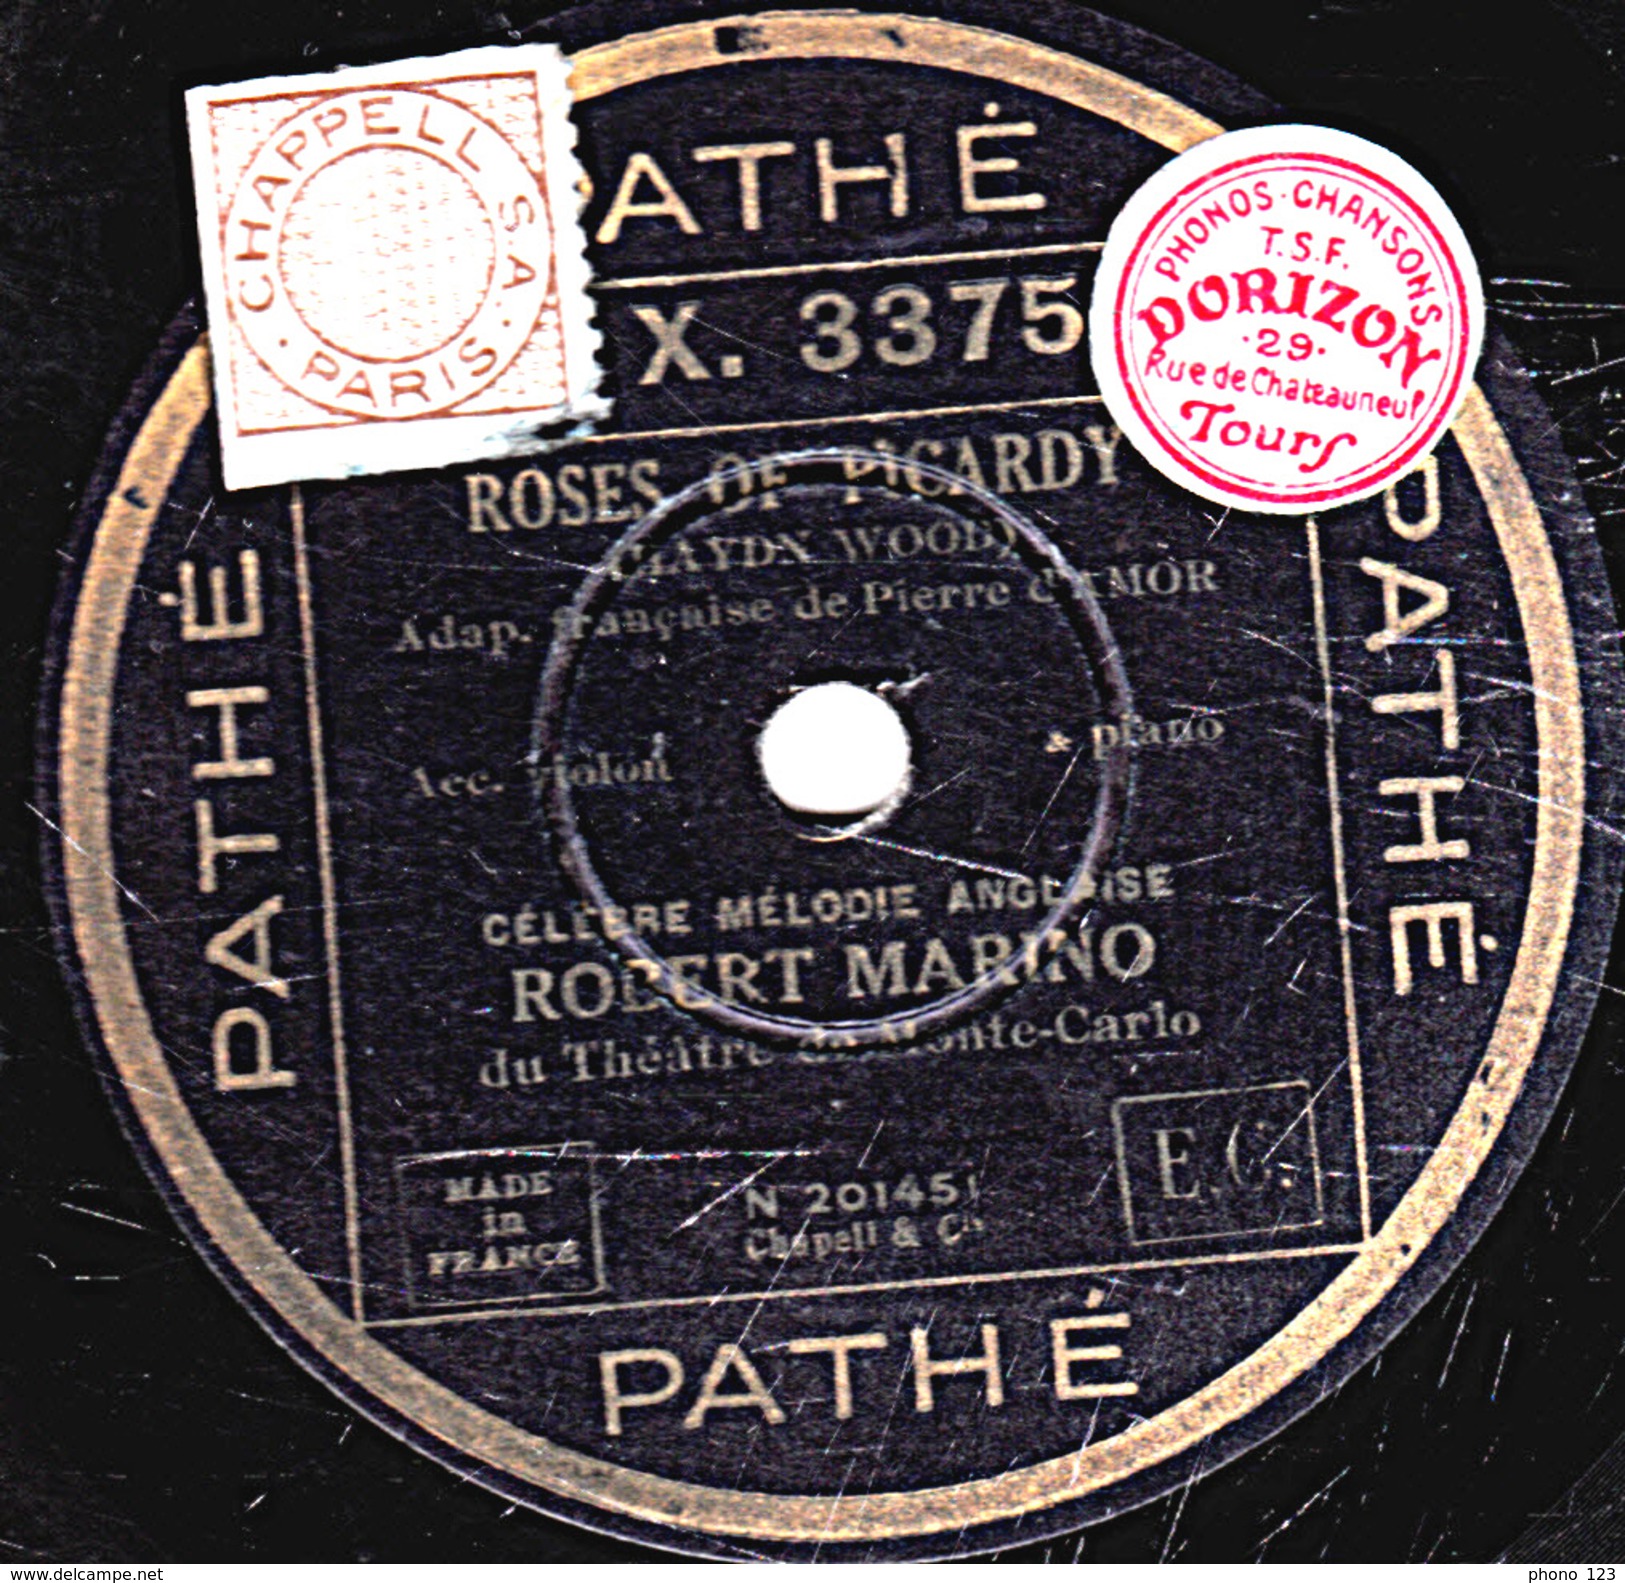 78 T. - 25 Cm - état  B - Robert MARINO - ROSES OF PICARDIE - PETITE MAISON GRISE - 78 T - Disques Pour Gramophone